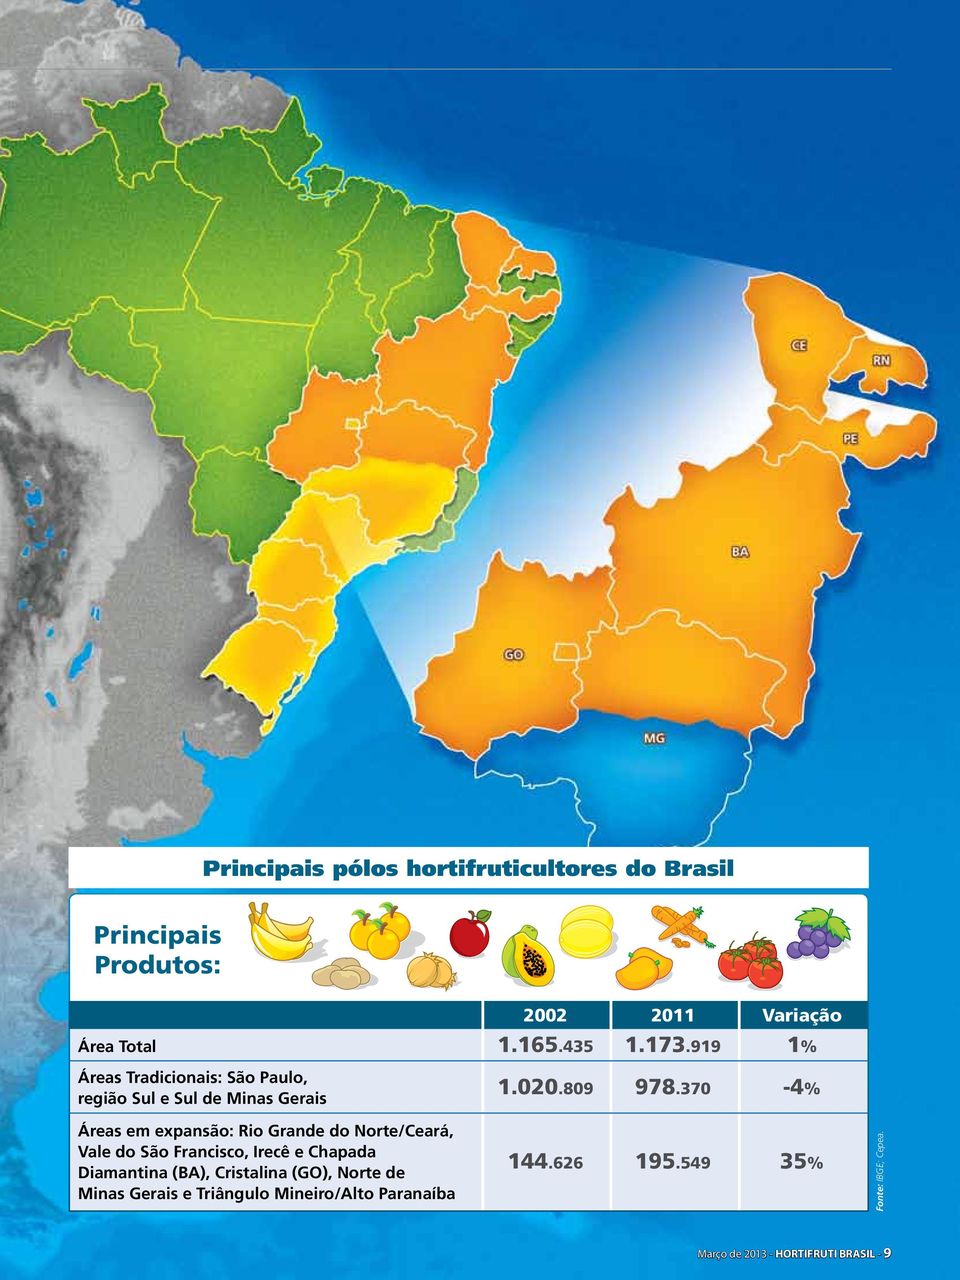 370-4% Áreas em expansão: Rio Grande do Norte/Ceará, Vale do São Francisco, Irecê e Chapada Diamantina (BA),